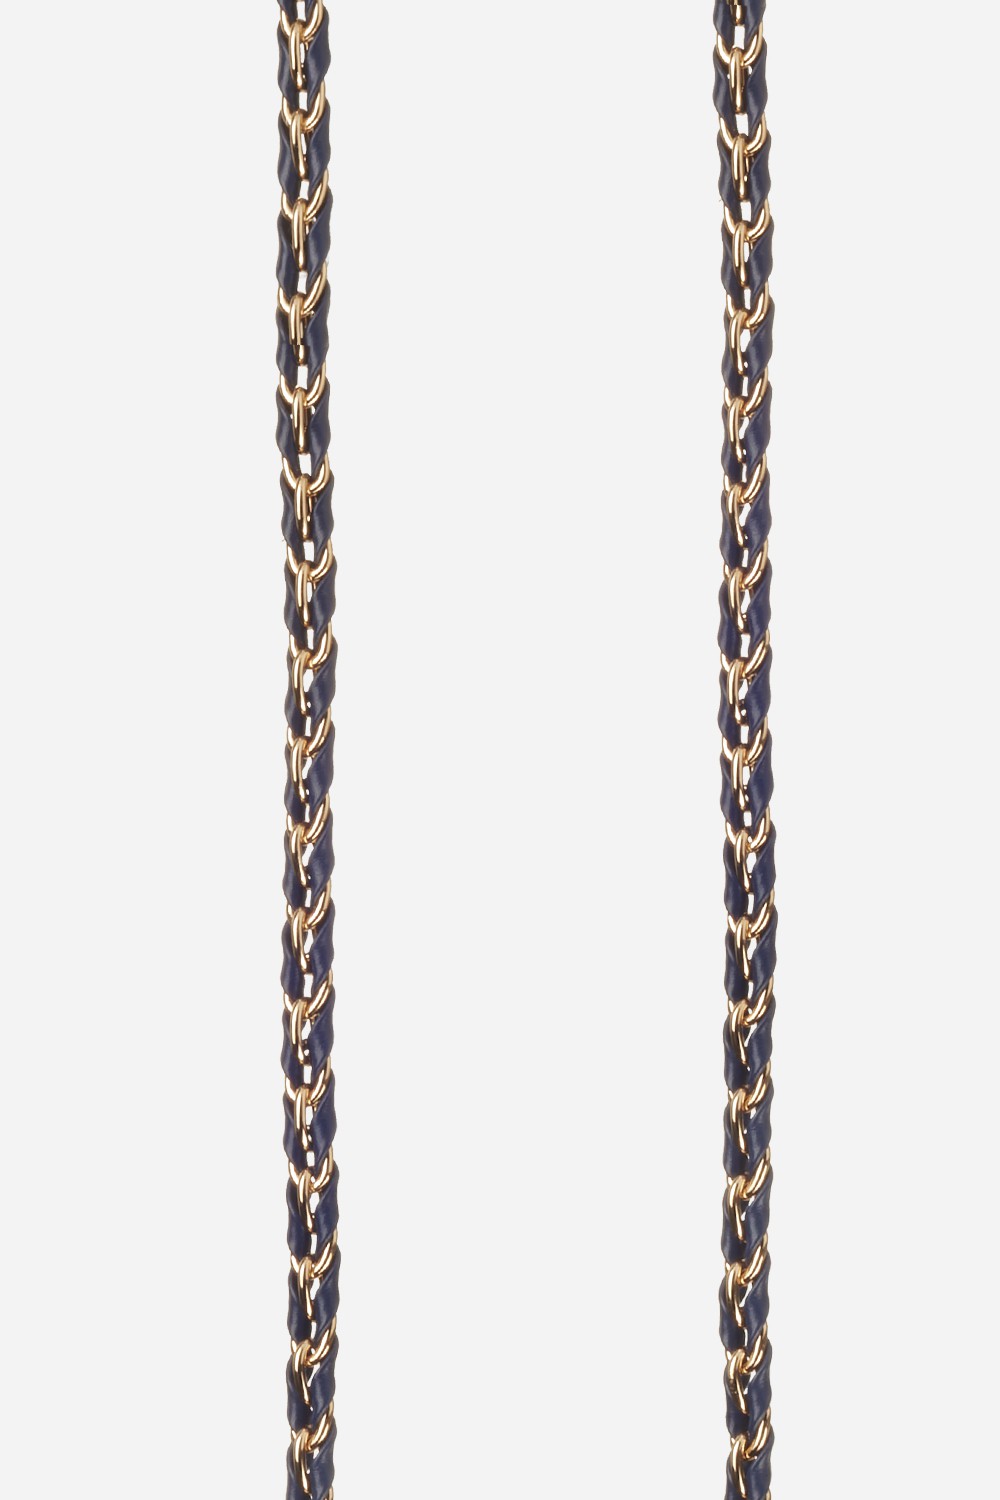 Chaine Longue Lou Bleu 120 cm